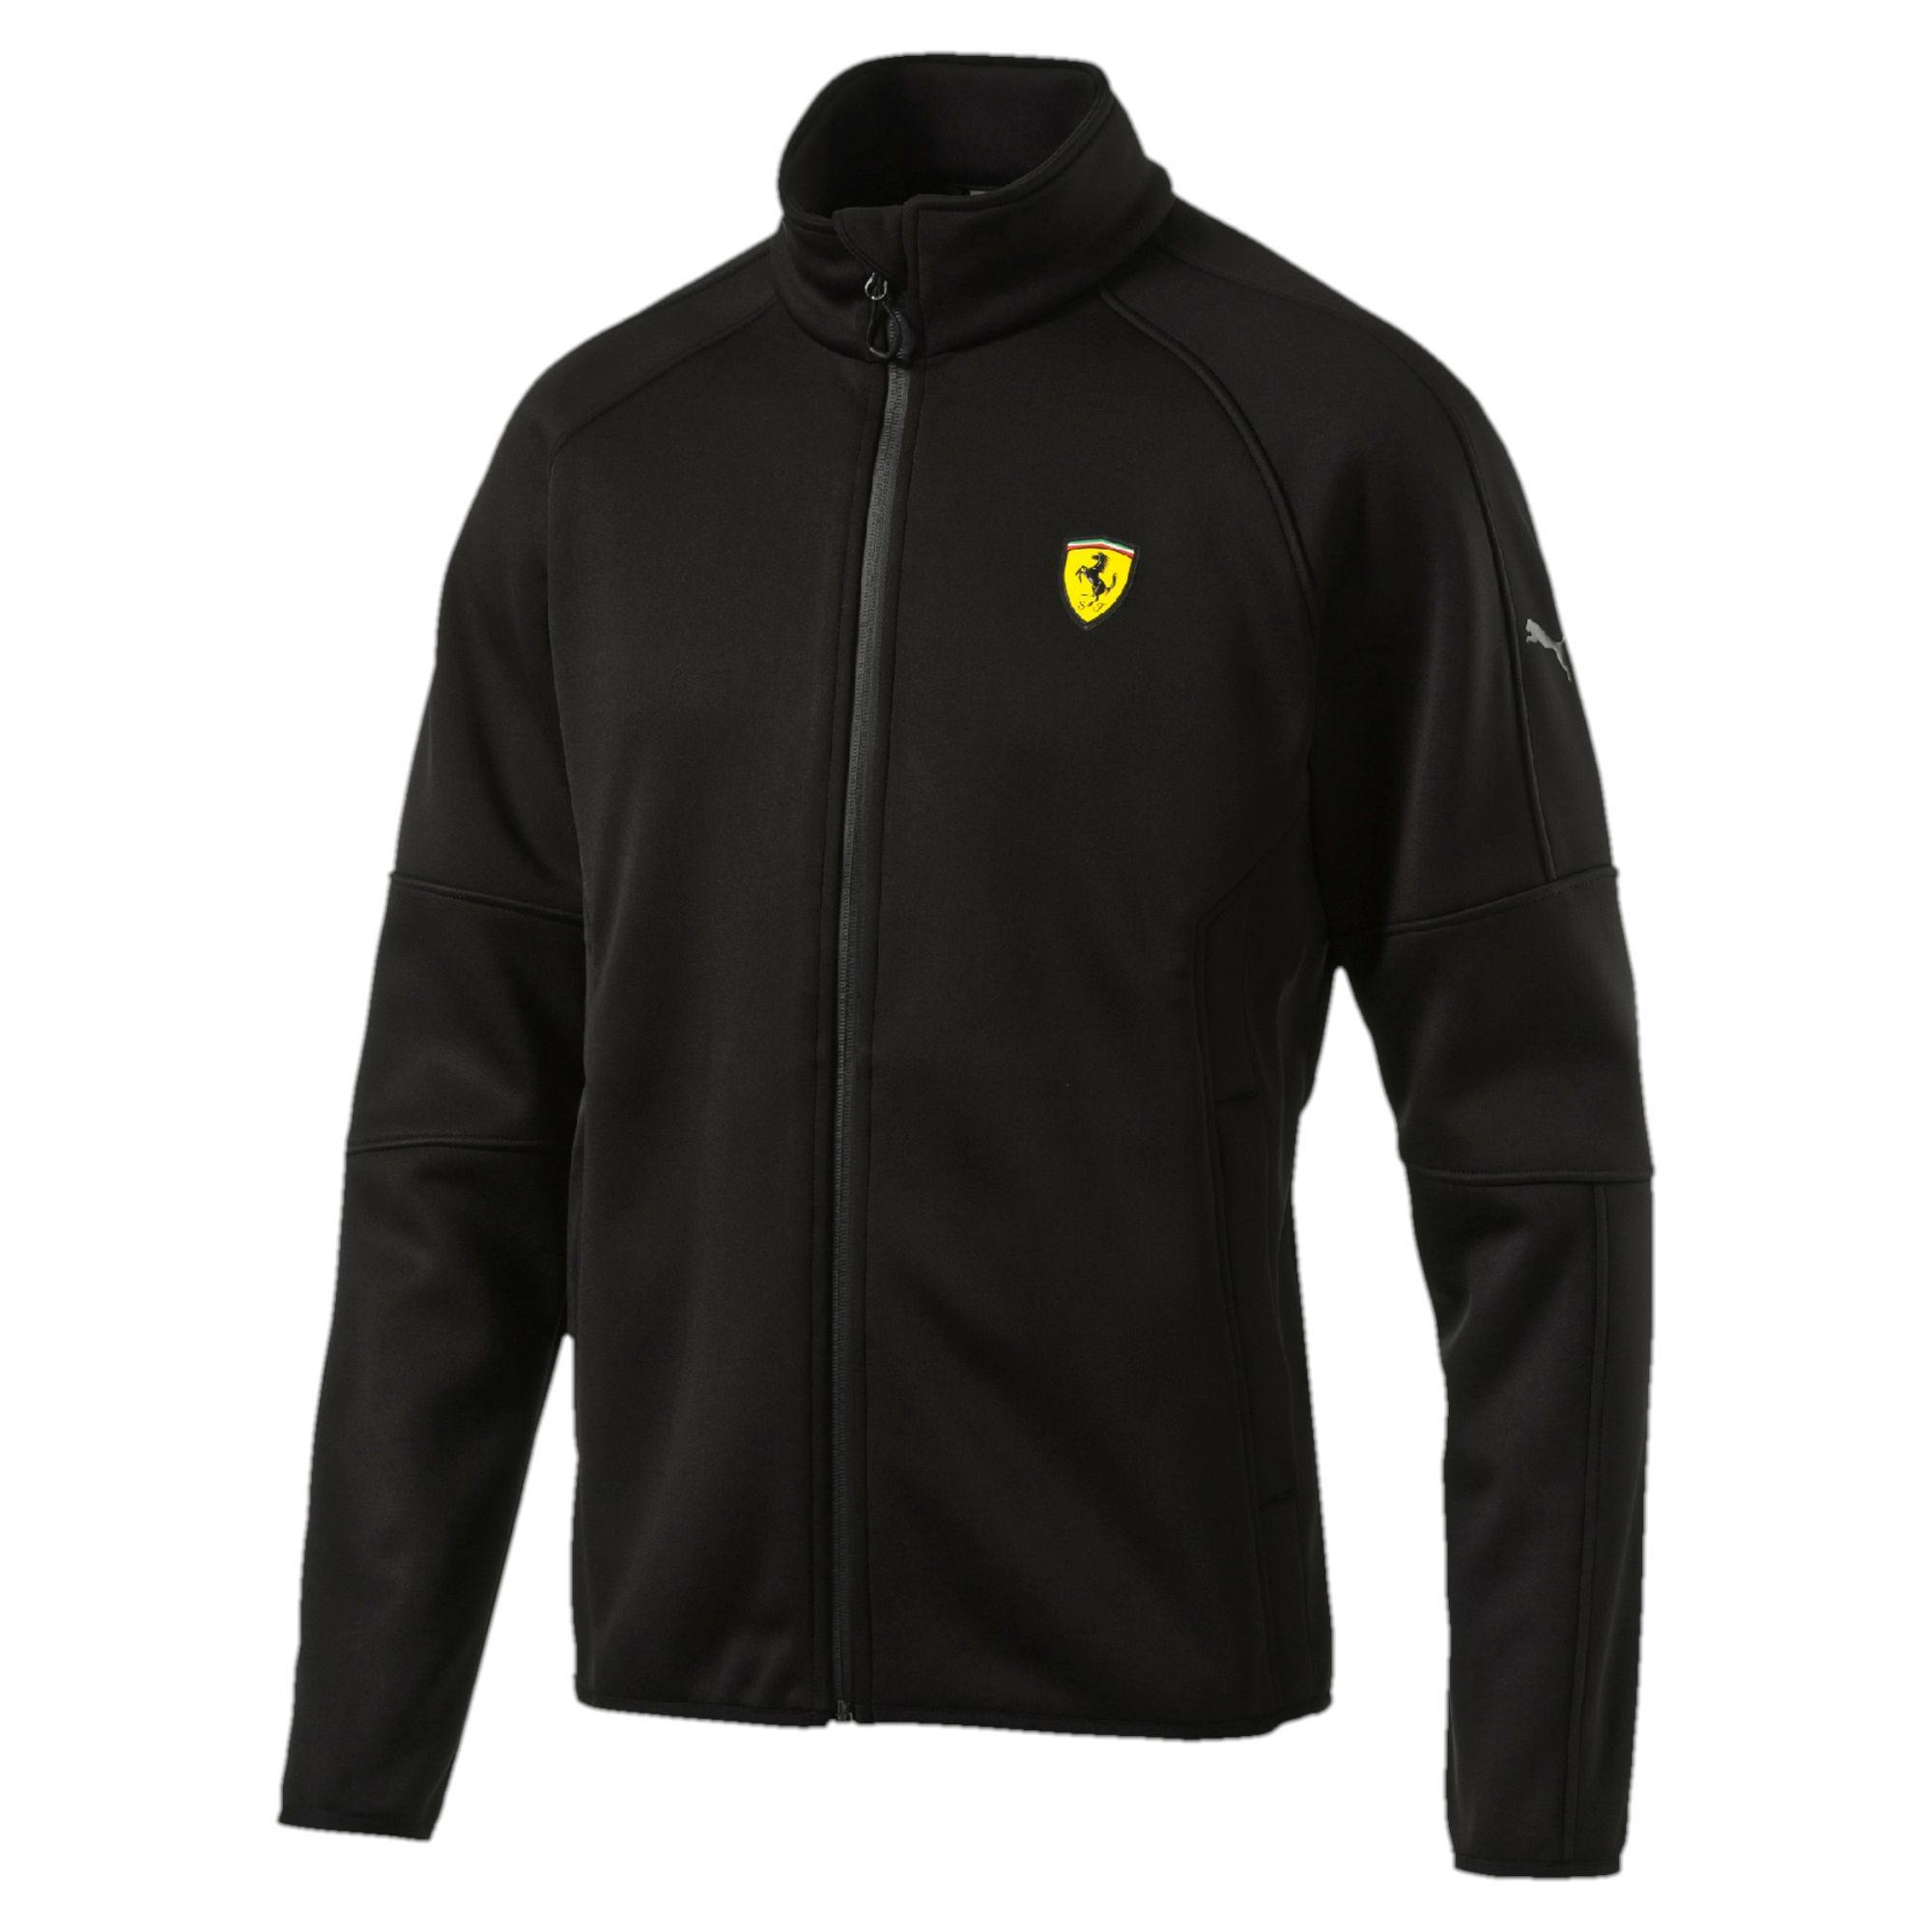 Lyst - PUMA Ferrari Softshell Jacket in Black for Men